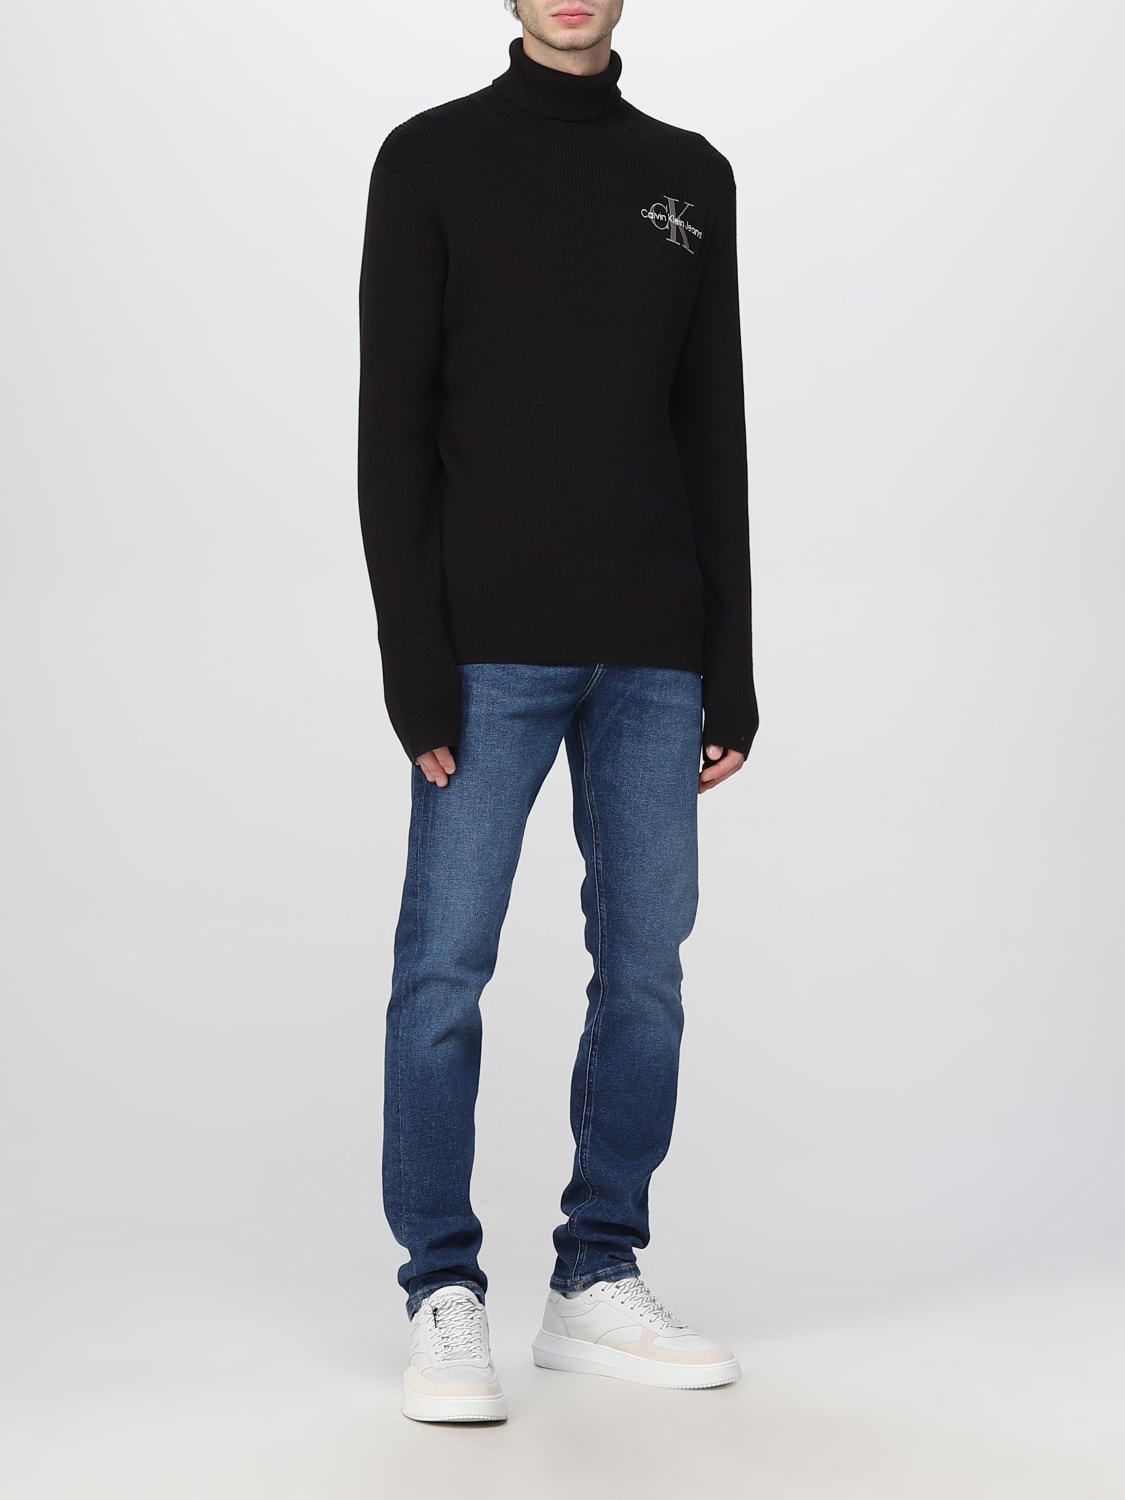 Kelder radicaal water CALVIN KLEIN JEANS: sweater for man - Black | Calvin Klein Jeans sweater  J30J322202 online on GIGLIO.COM